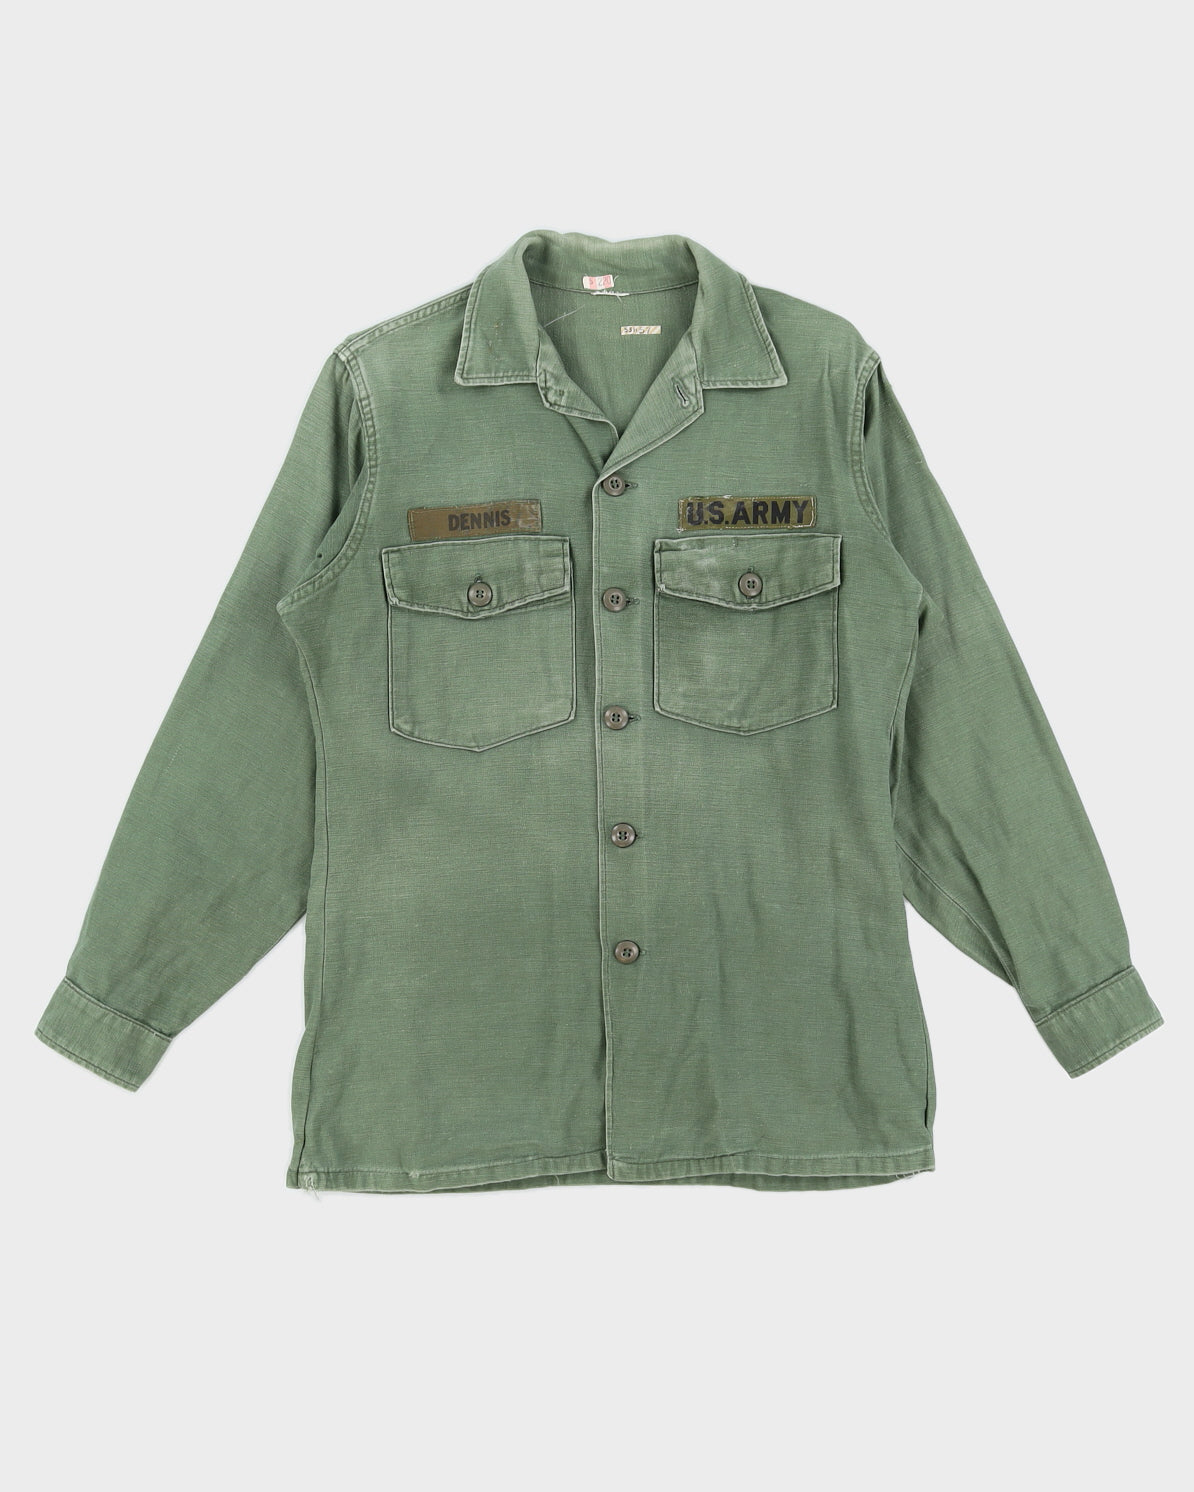 60s Vintage US Army OG-107 Shirt - M